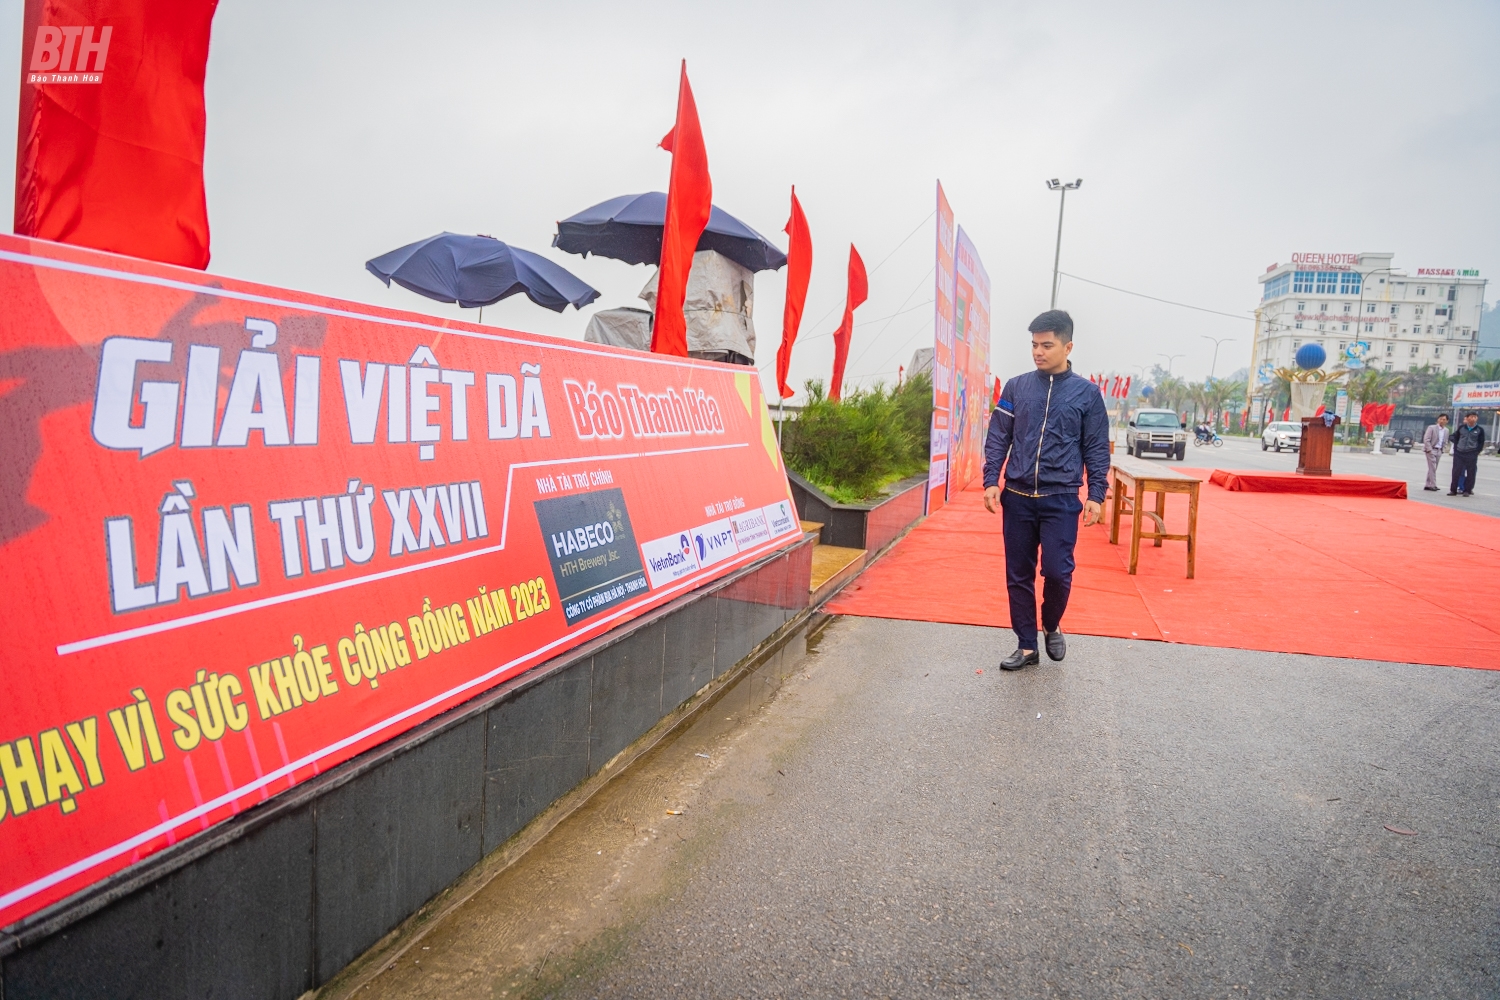 Sẵn sàng cho giải Việt dã Báo Thanh Hoá lần thứ XXVII